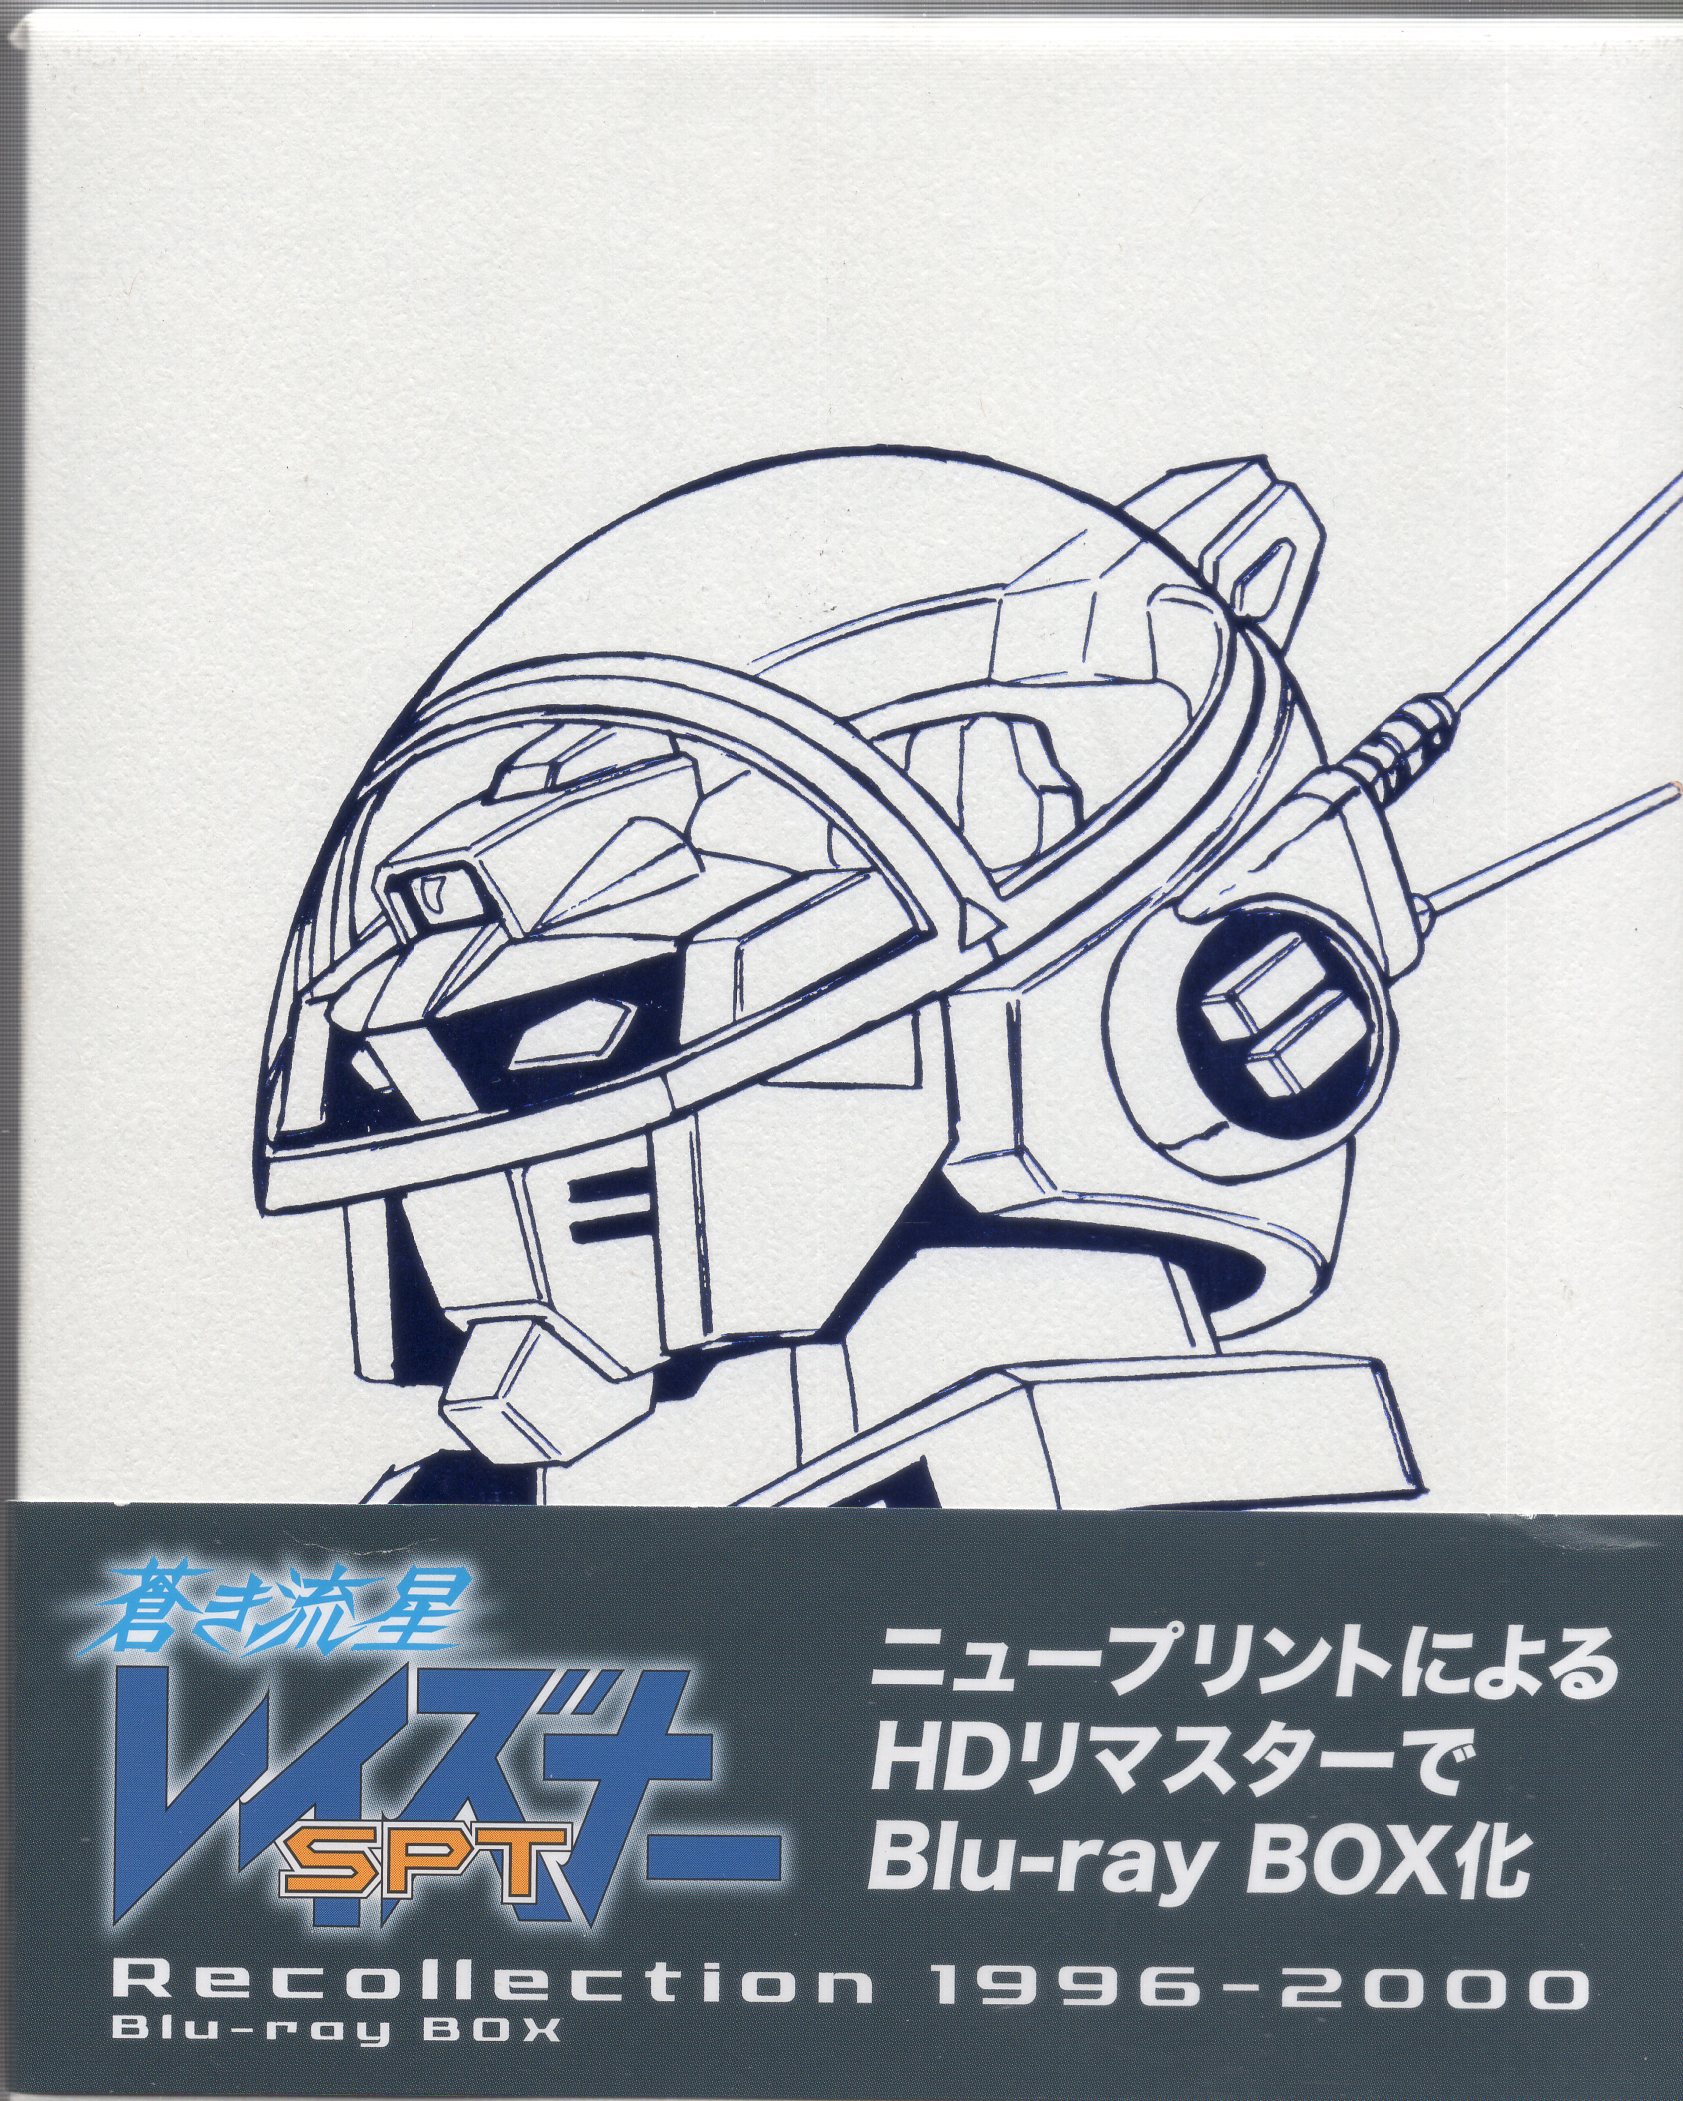 アニメBlu-ray 蒼き流星SPTレイズナー Recollection 1996-2000 Blu-ray